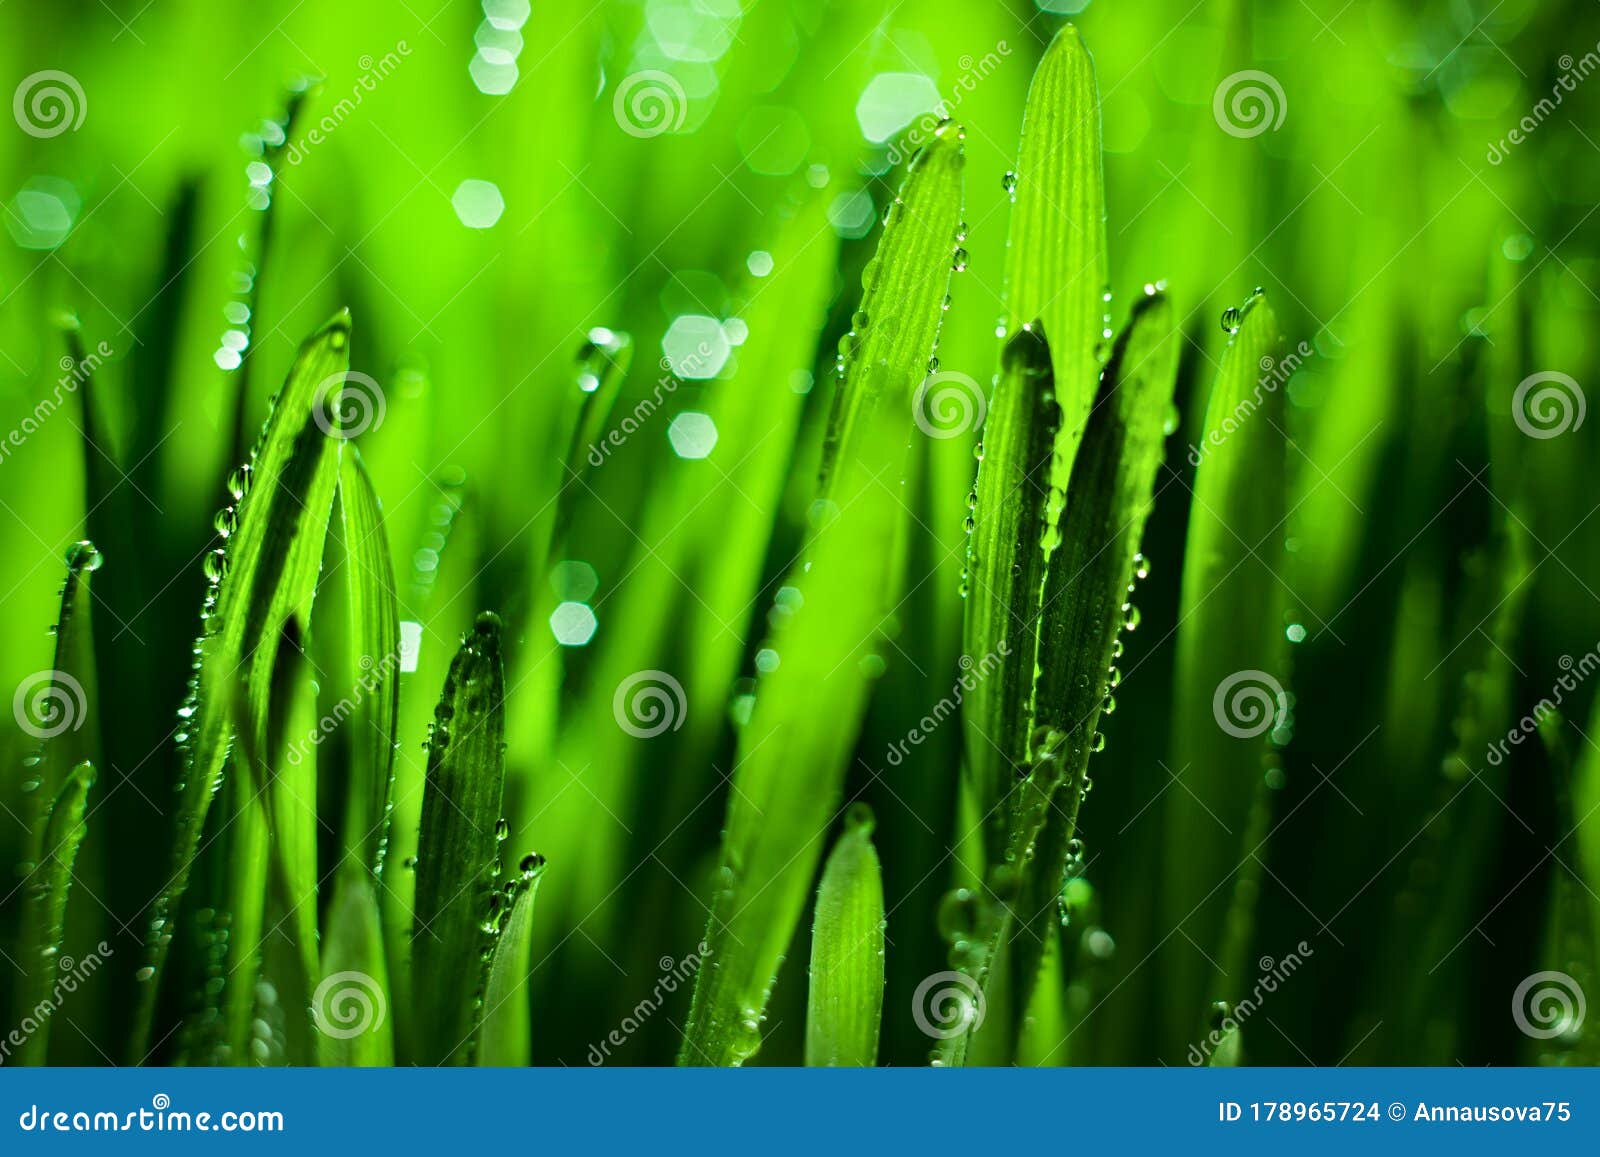 Water Drops: Bạn có thể không tin được rằng những giọt nước nhỏ bé lại có thể mang lại vẻ đẹp đầy ấn tượng và sống động. Khám phá ngay bộ sưu tập những bức ảnh tuyệt đẹp về những giọt nước rơi như đang tạo ra một bức tranh sống động trên trang web của chúng tôi.